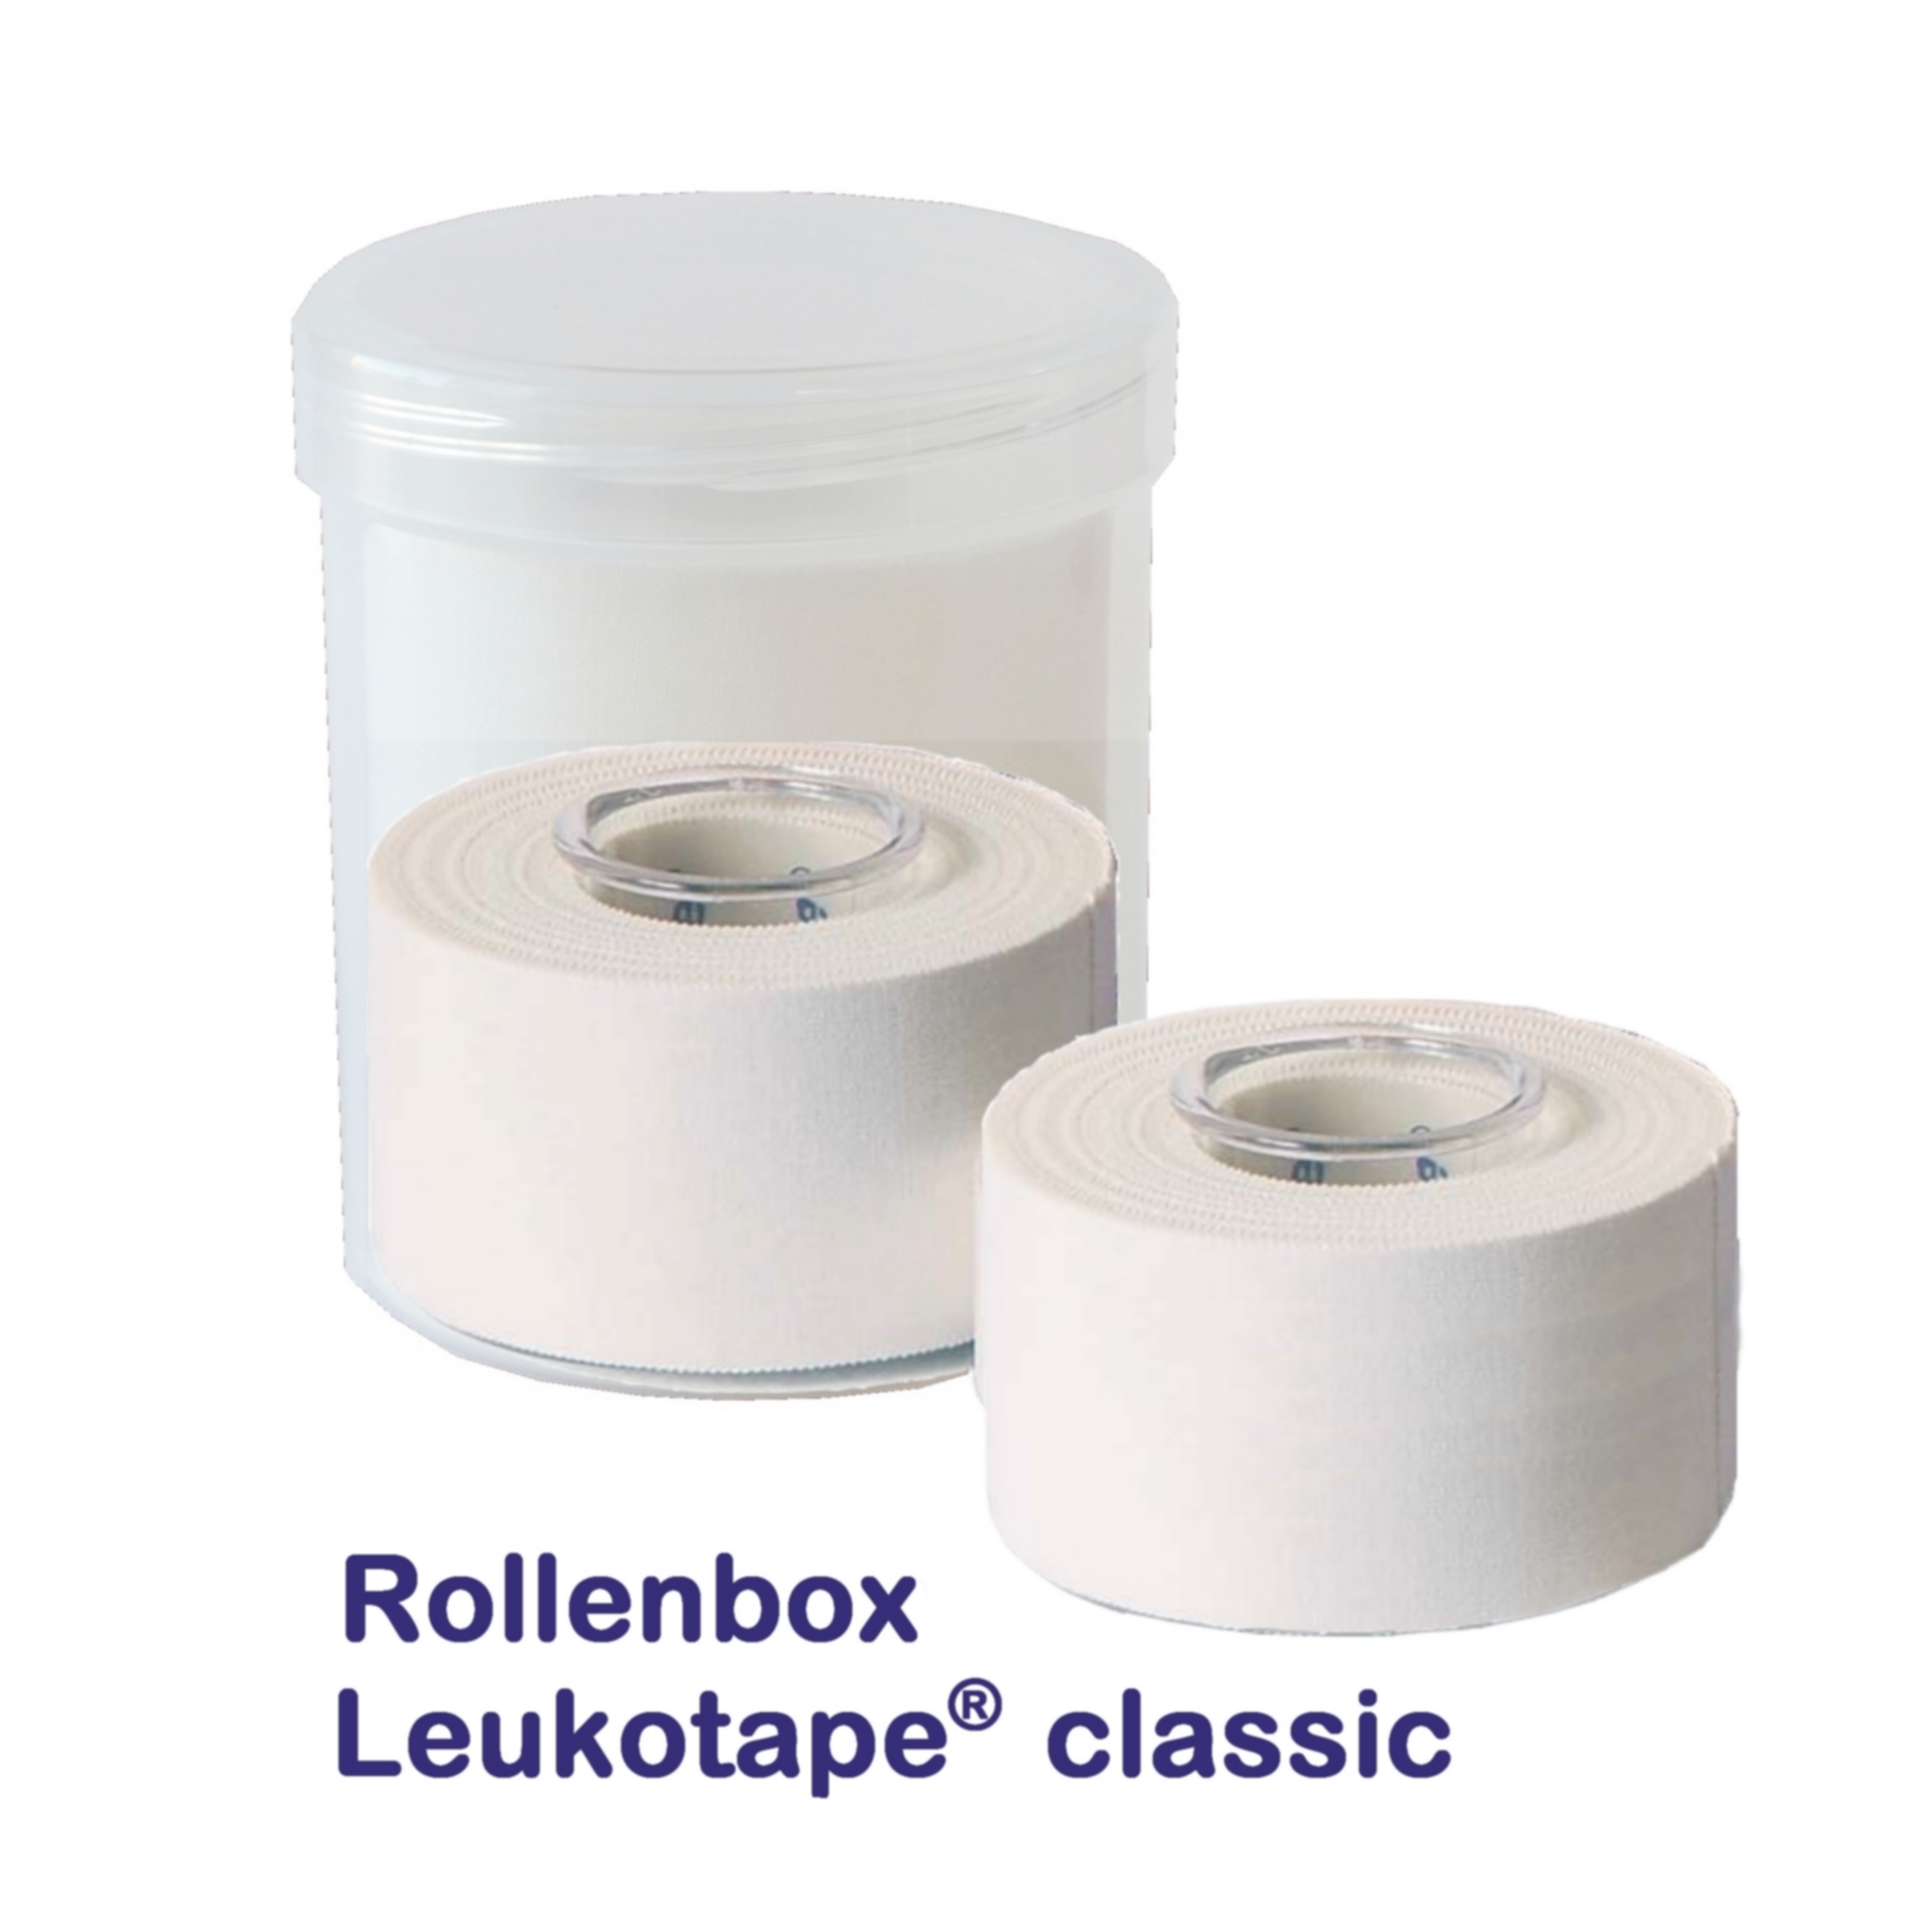 Leukotape Classic Rollen-Box - 3,75cm